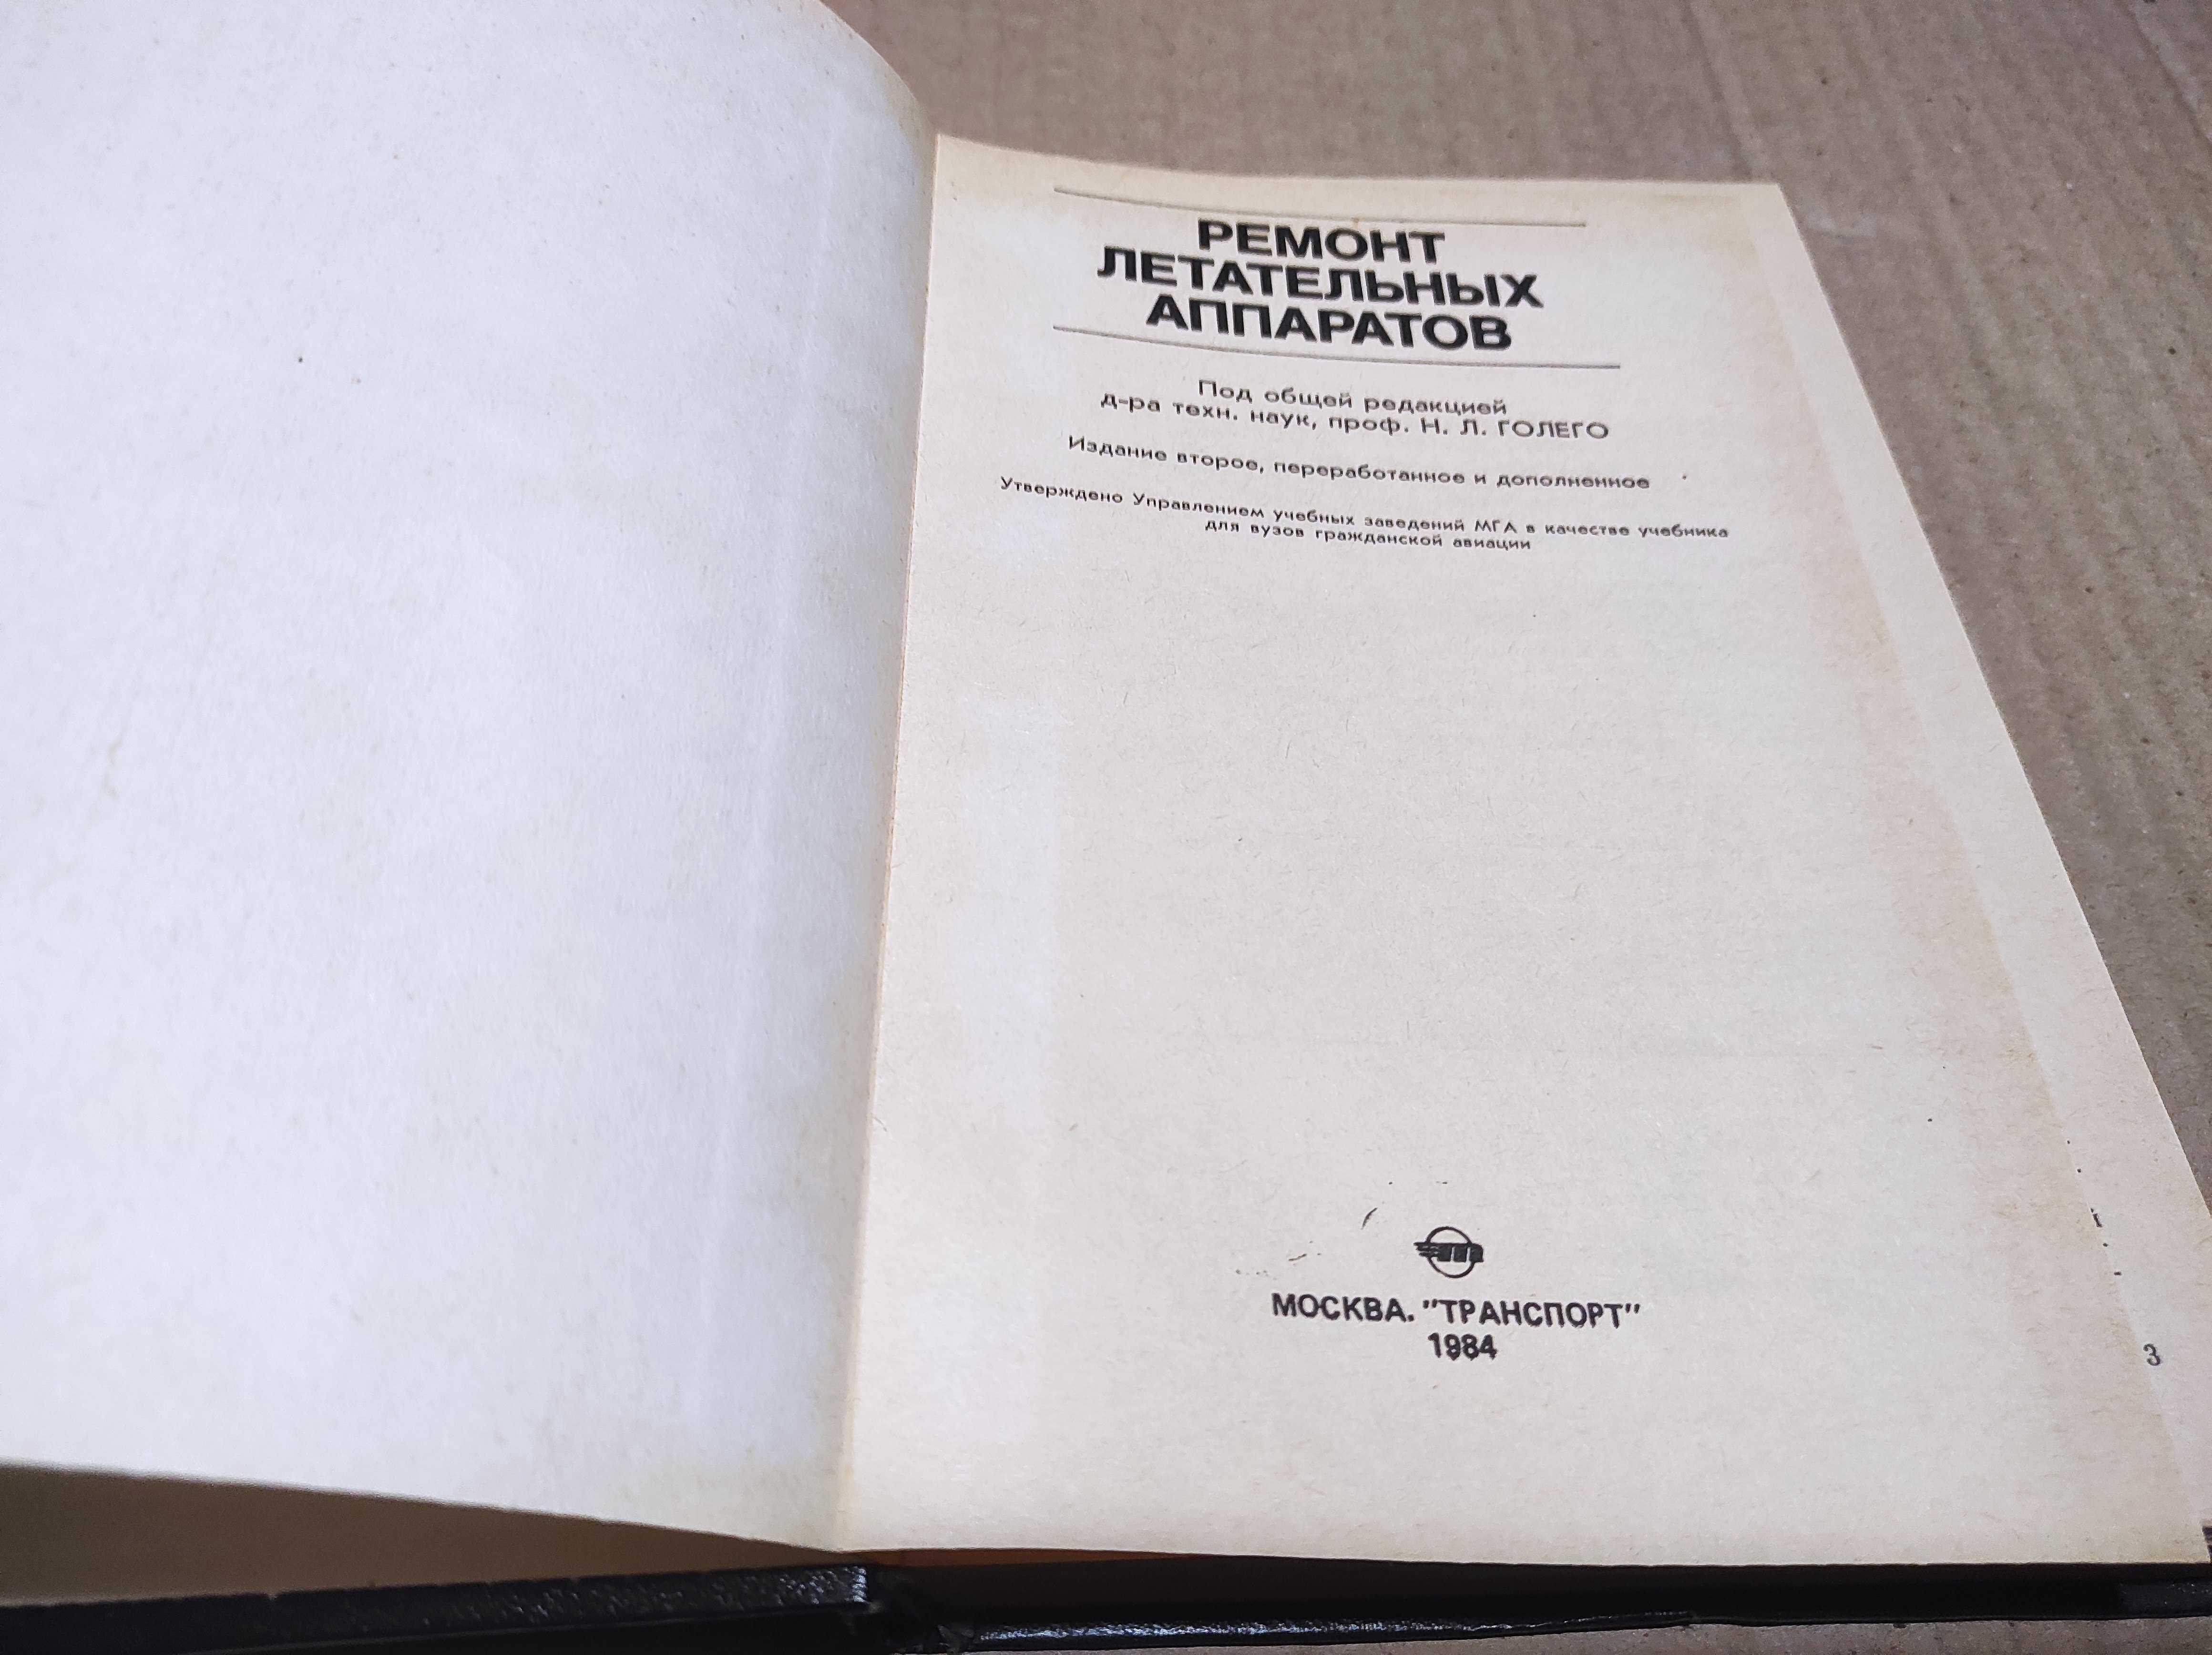 Книга "Ремонт летательных аппаратов" 1984 г.